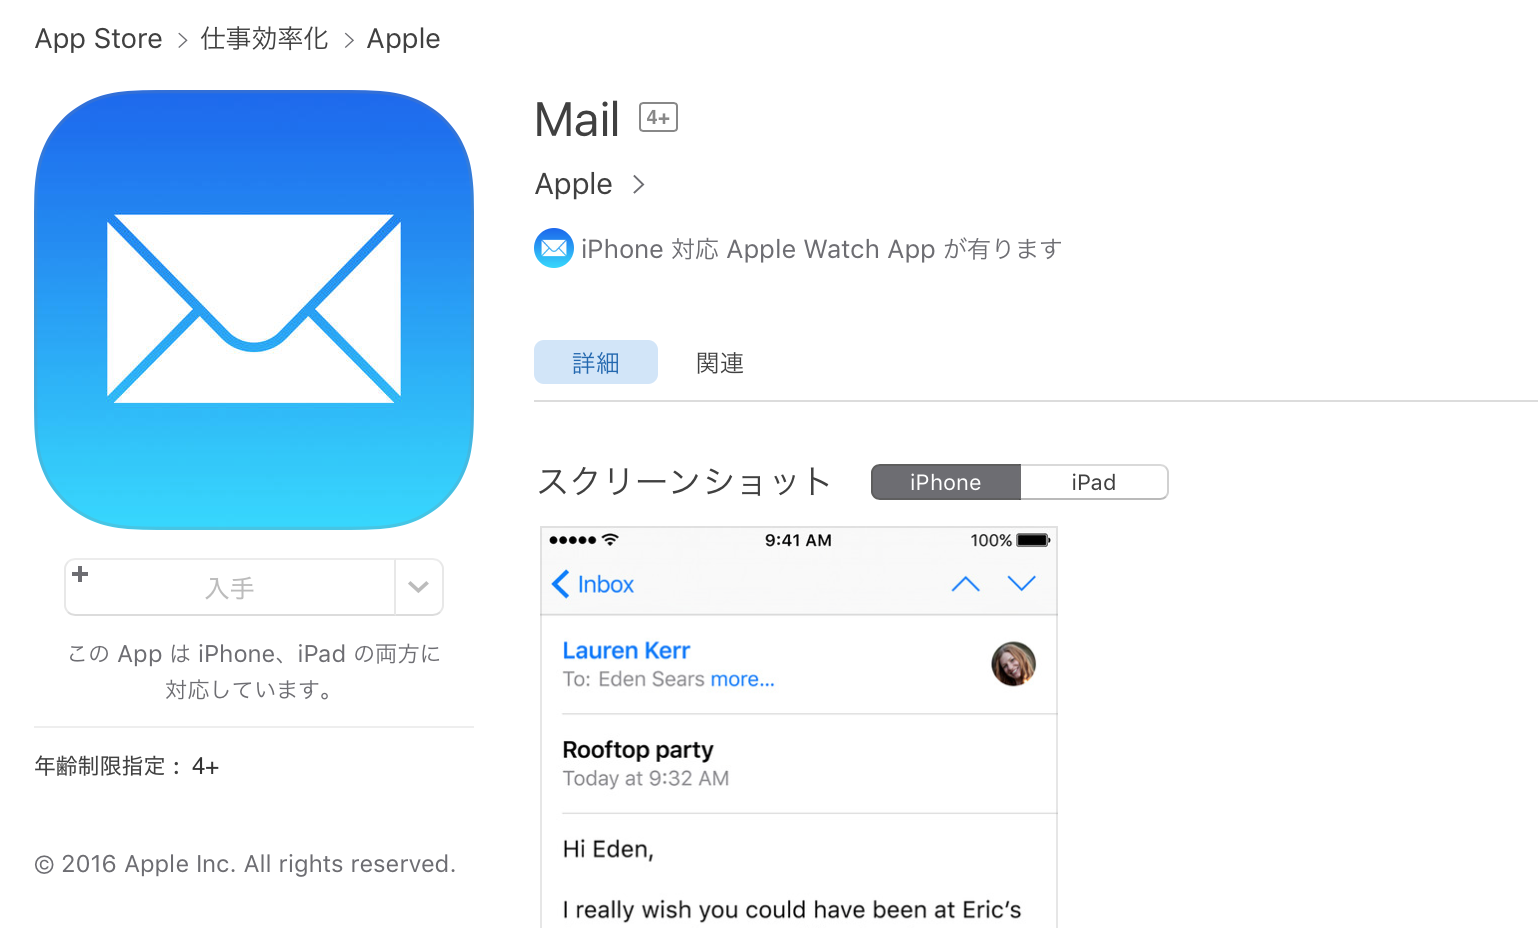 【UPDATE】｢iOS｣、ついに純正アプリの削除が可能に?!